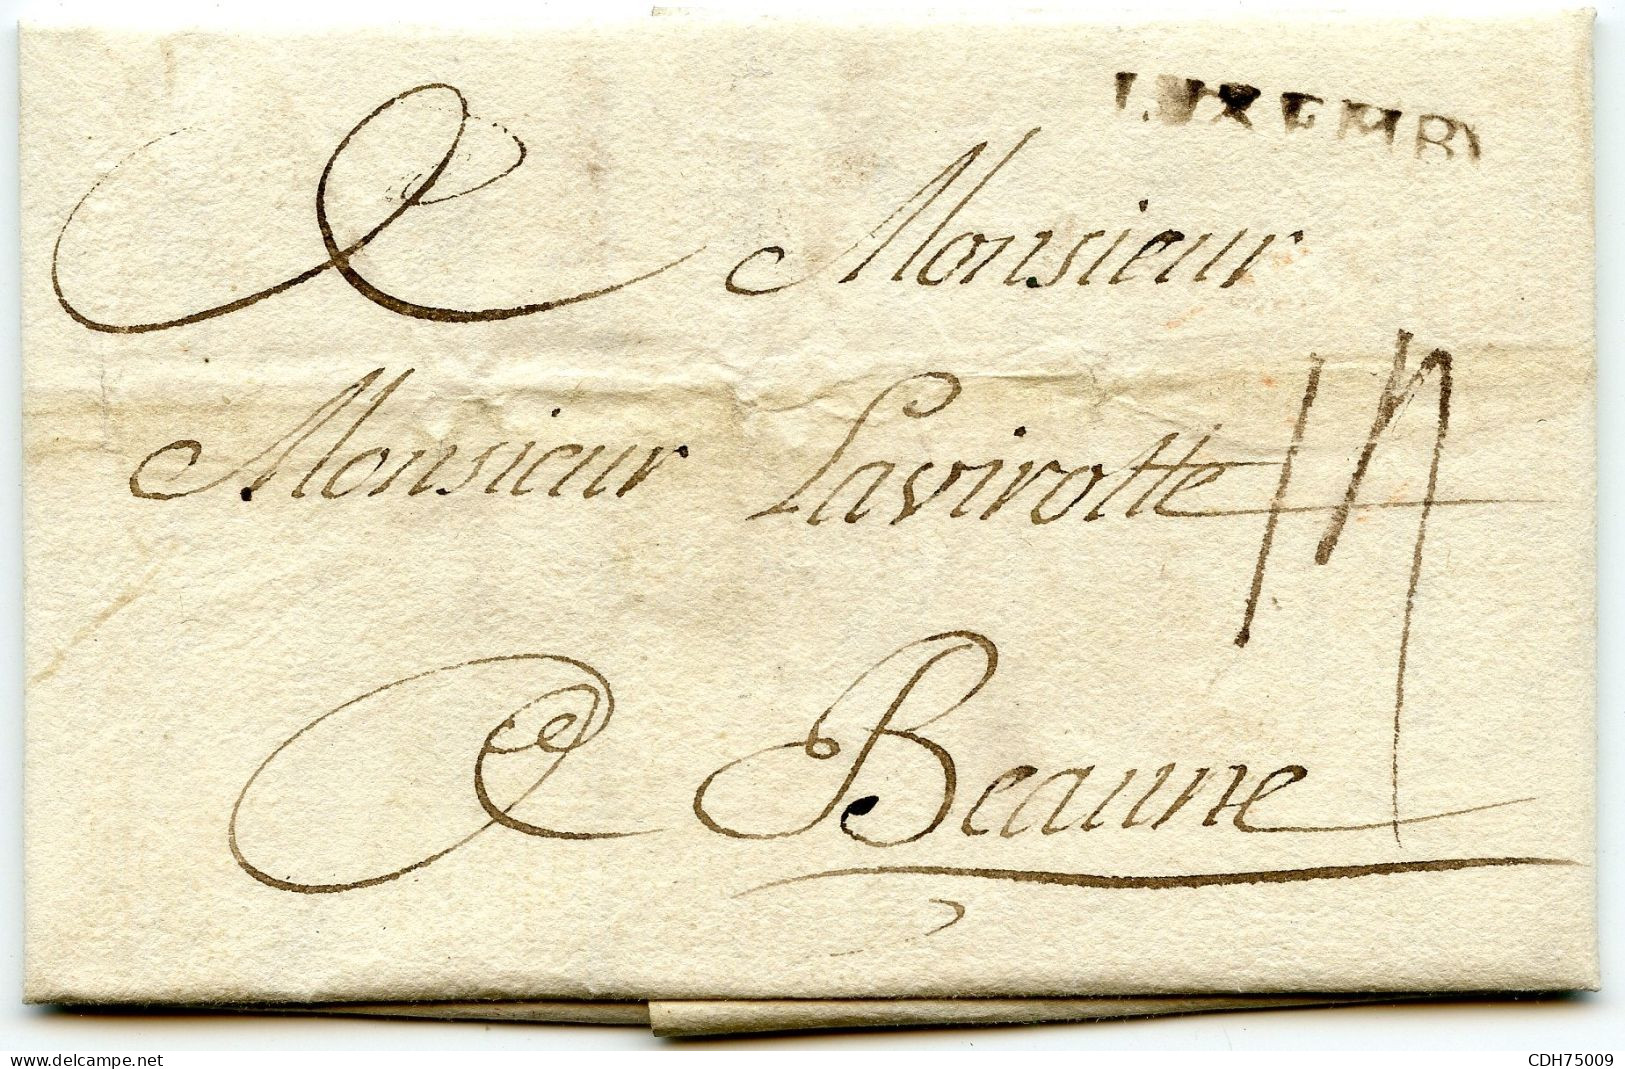 LUXEMBOURG - LUXEMB. AU TAMPON SUR LETTRE AVEC CORRESPONDANCE POUR LA FRANCE, 1759 - ...-1852 Prephilately